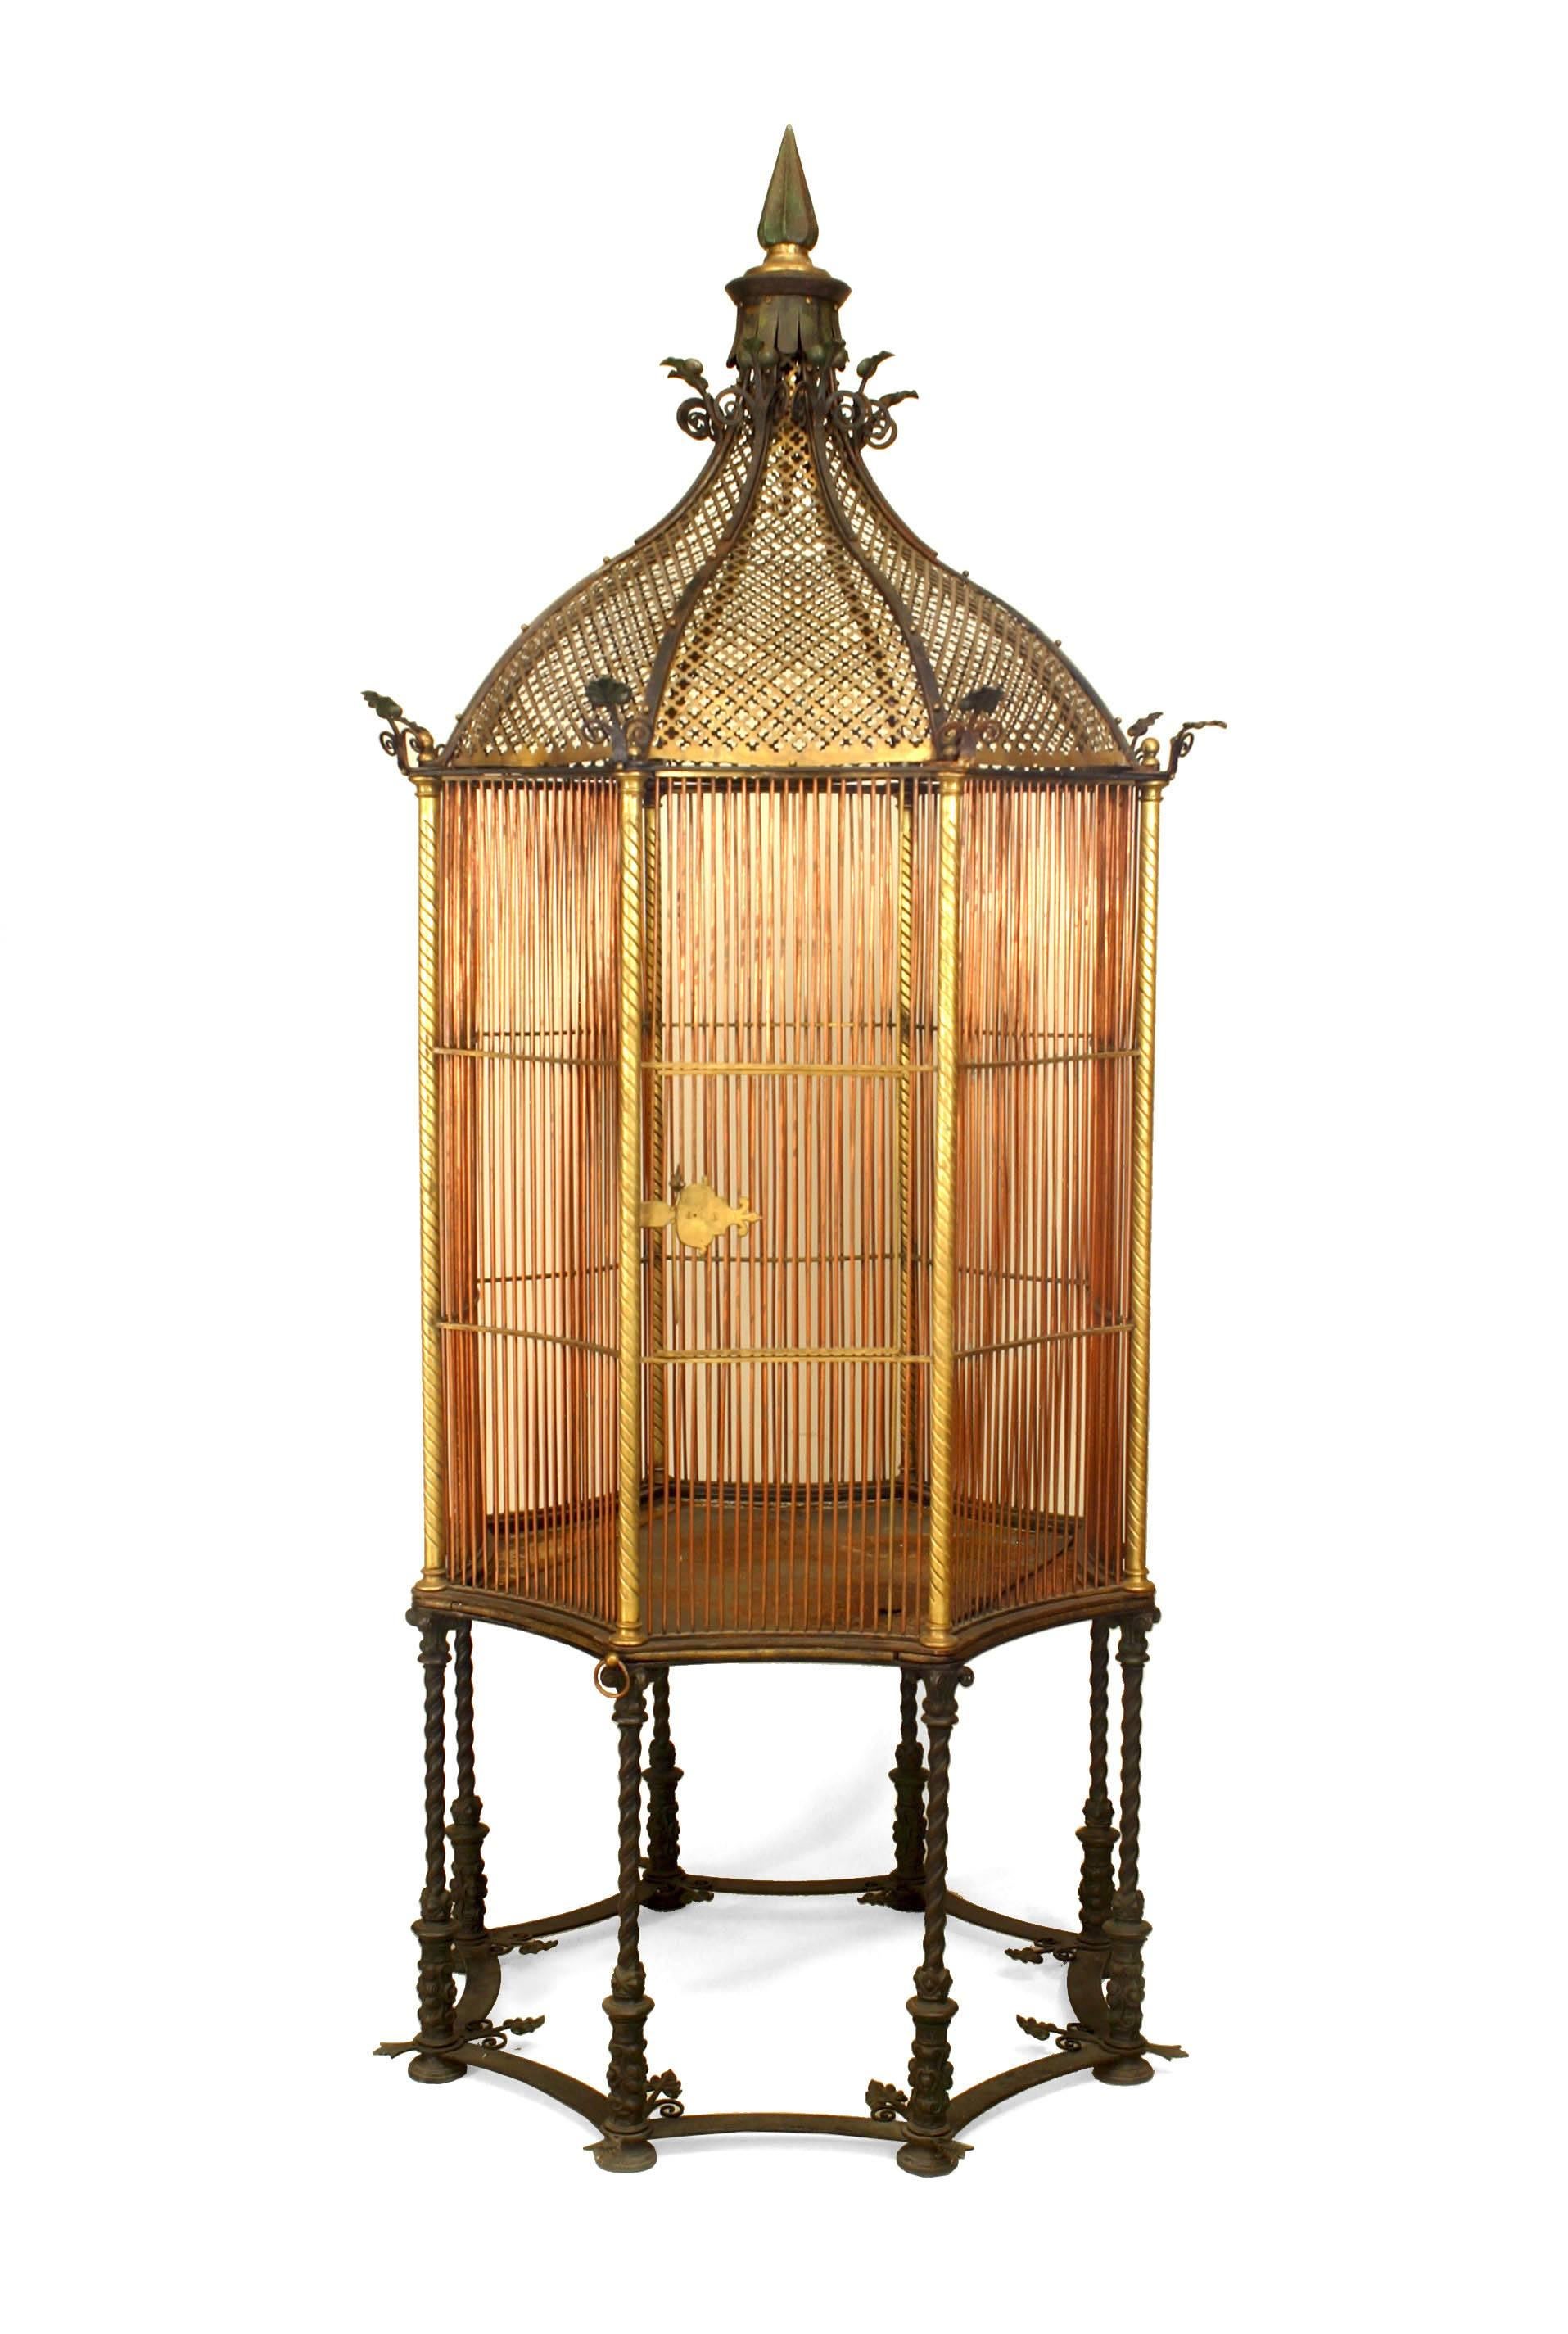 Cage à oiseaux monumentale de forme octogonale en bronze et cuivre de l'époque victorienne anglaise, avec un dôme et un fleuron dorés, reposant sur 8 pieds en fer tournoyant. (Brevet #1107831-Henry Jones)
